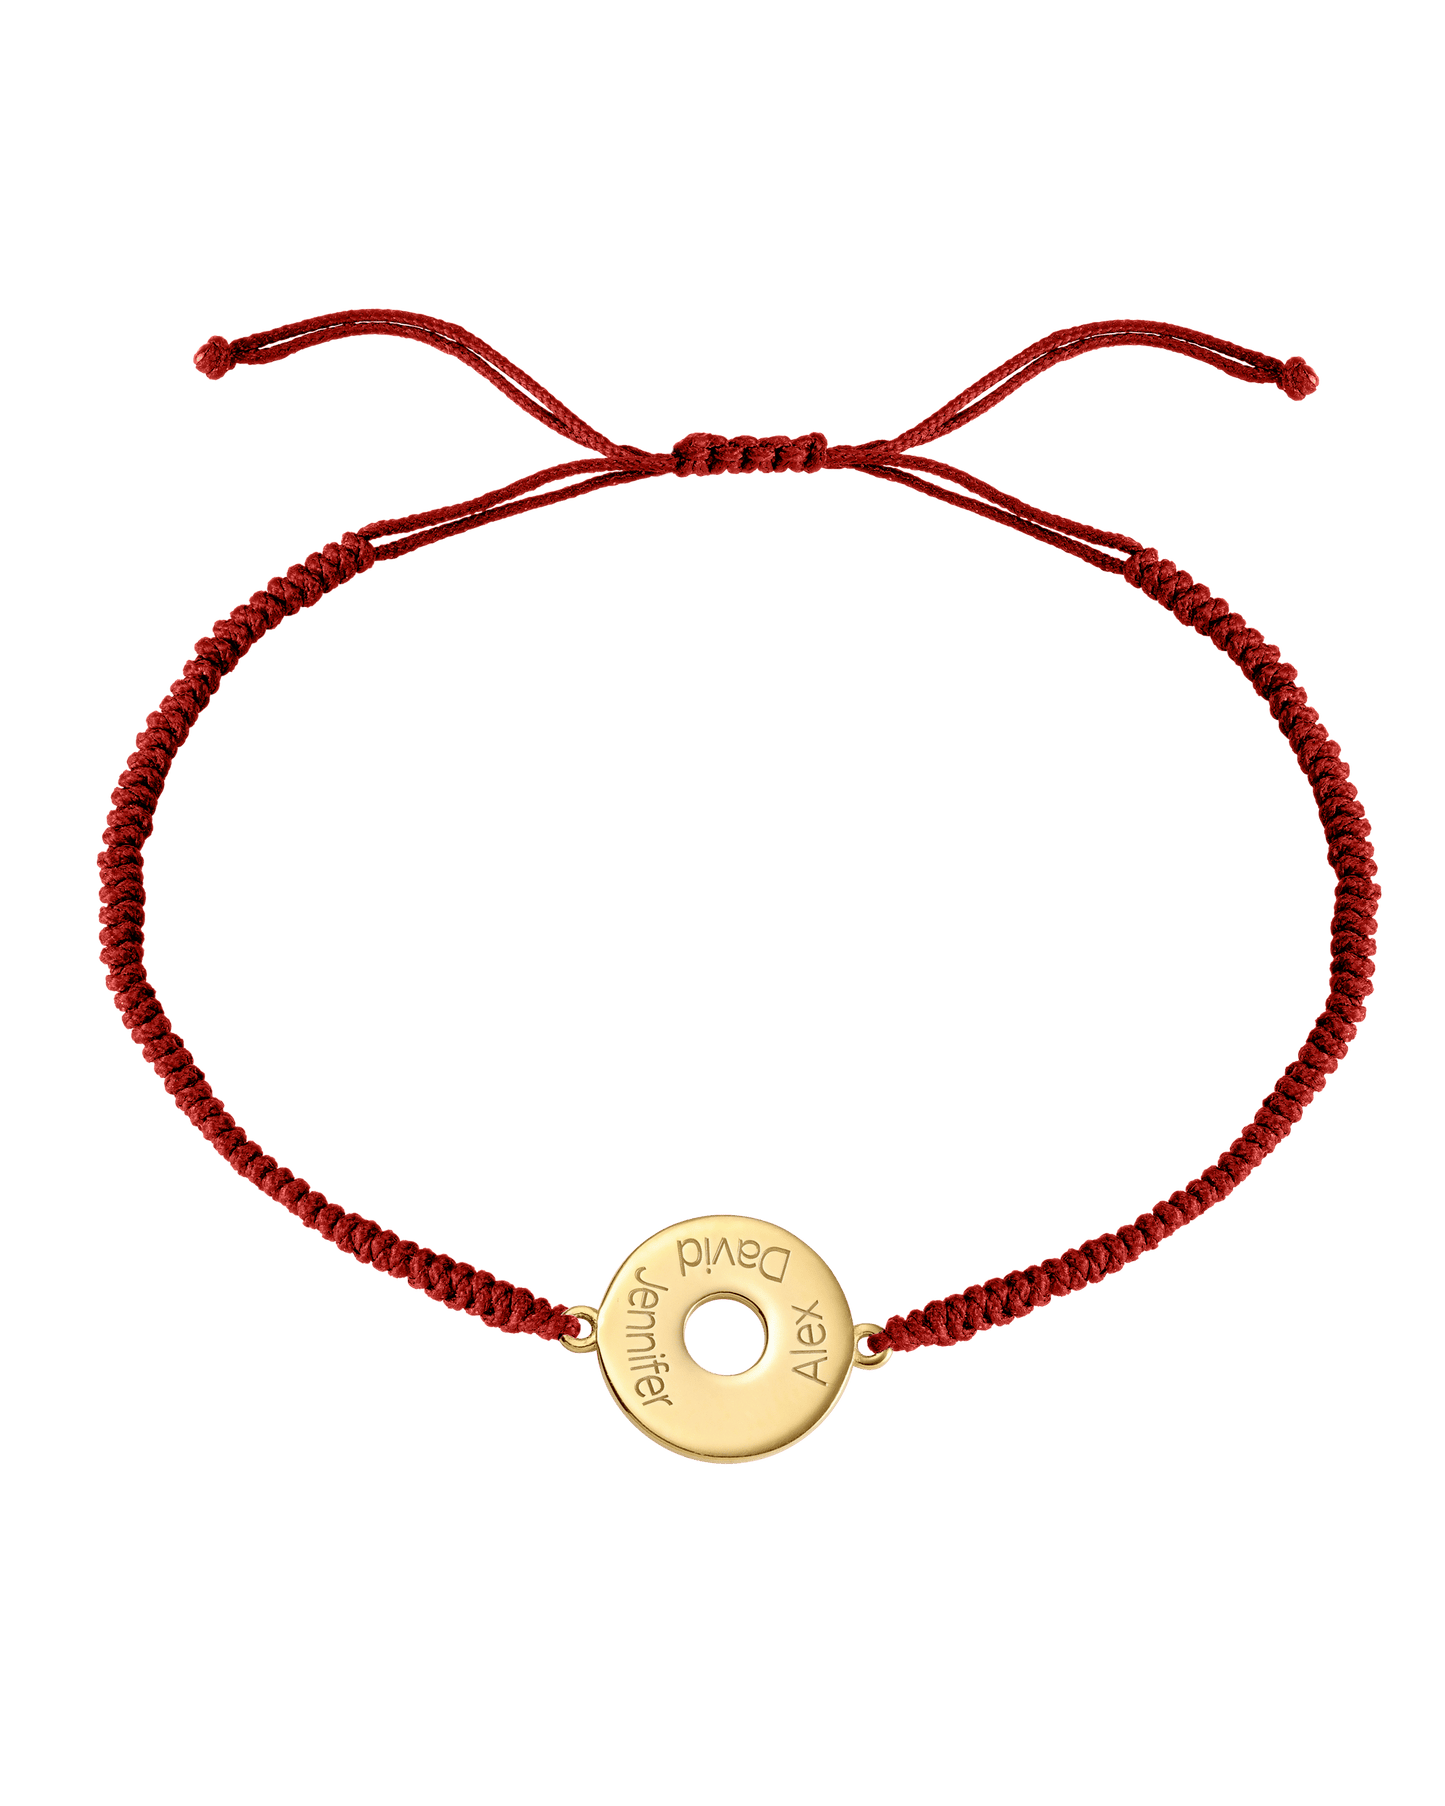 Donut Cord Bracelet - 18K Gold Vermeil Bracelets magal-dev Red 1 Name Adjustable from 4" to 9"